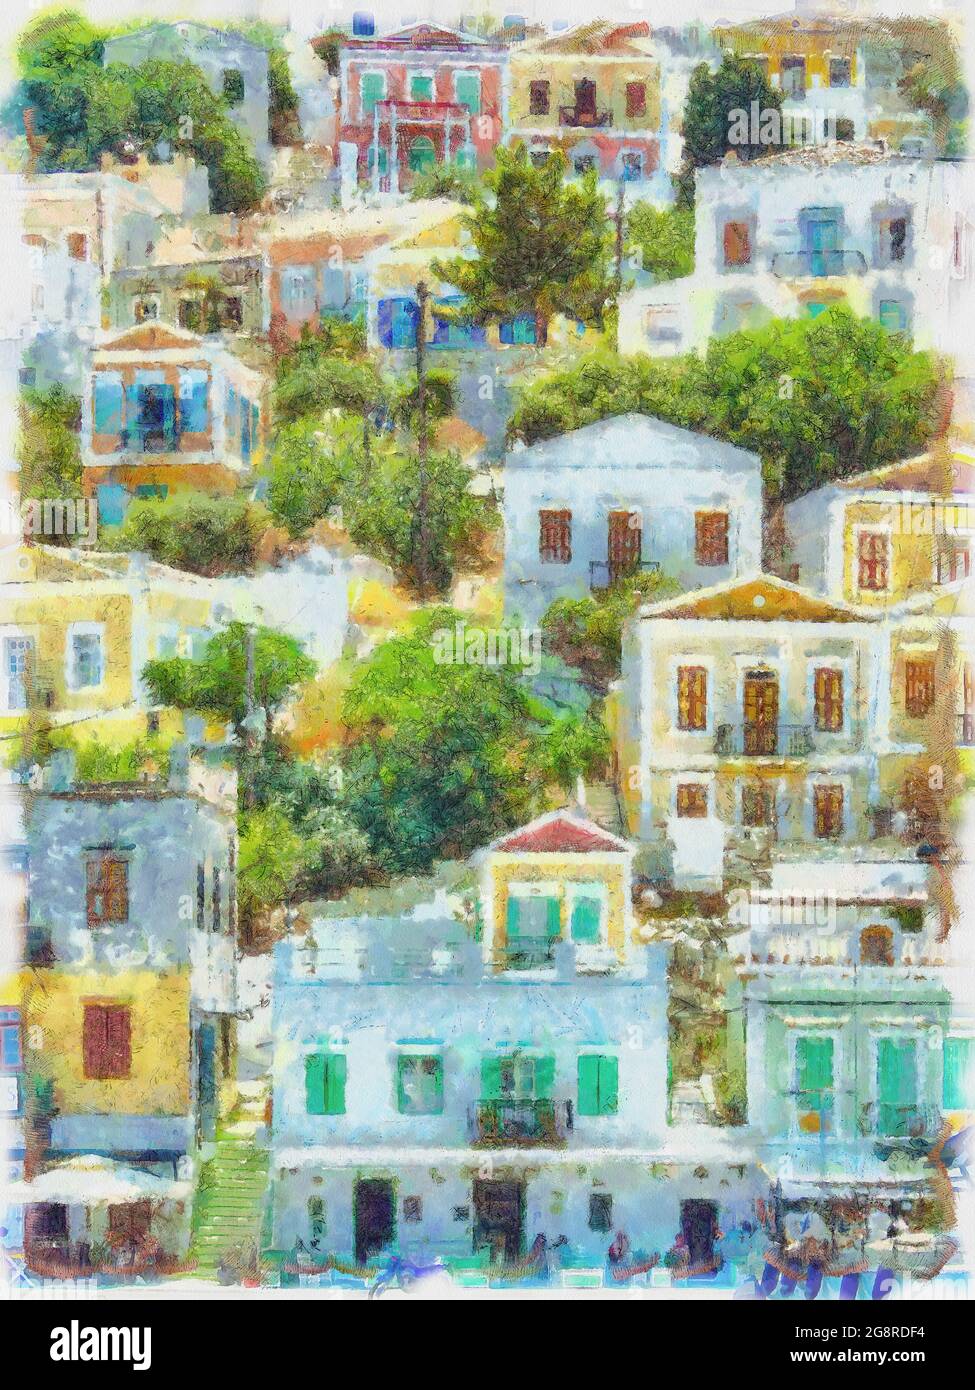 SYMI è un'isola greca e fa parte del gruppo delle isole del Dodecaneso. Si tratta di un dipinto digitale delle case collinari colorate che vedrete lì. Foto Stock